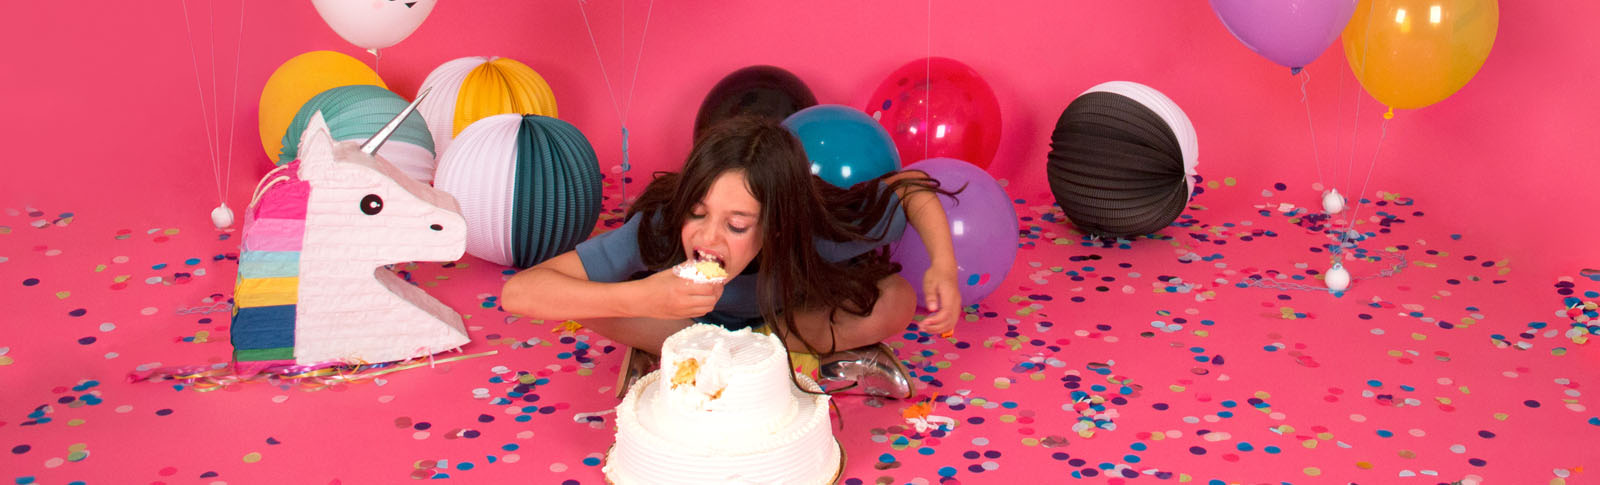 Come organizzare la festa di compleanno di un bambino?